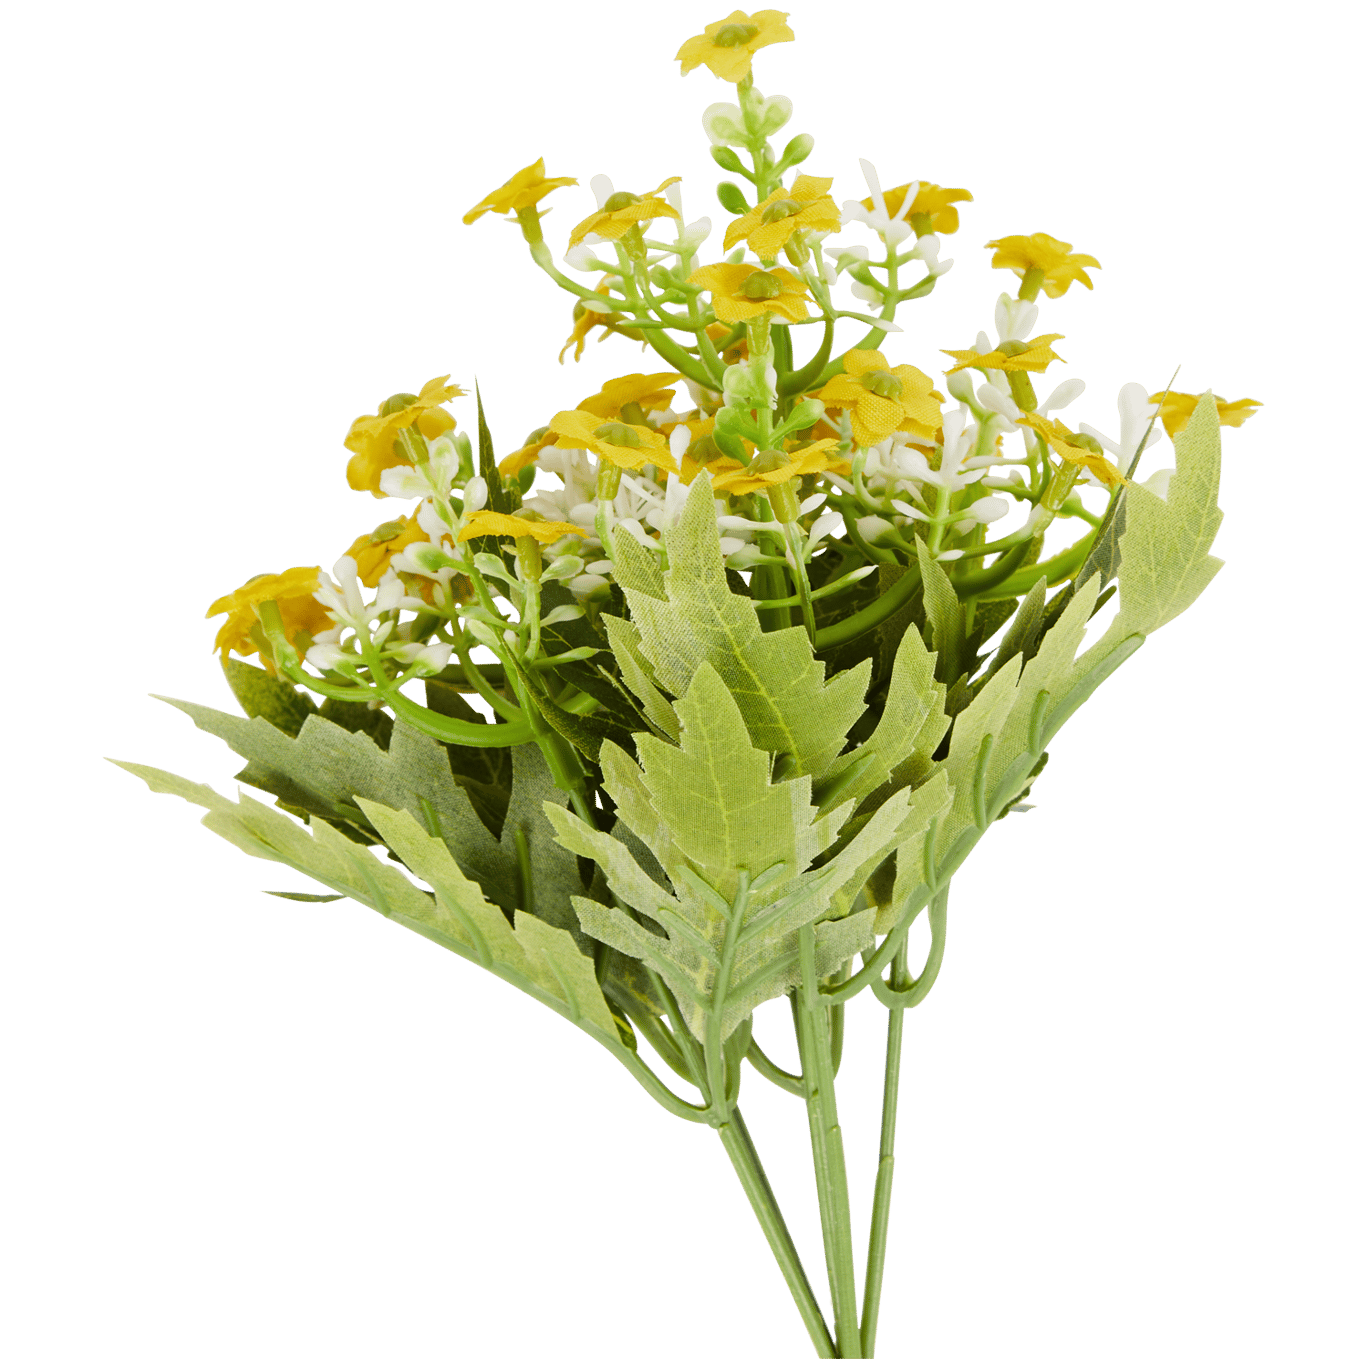 Ramo de flores artificial